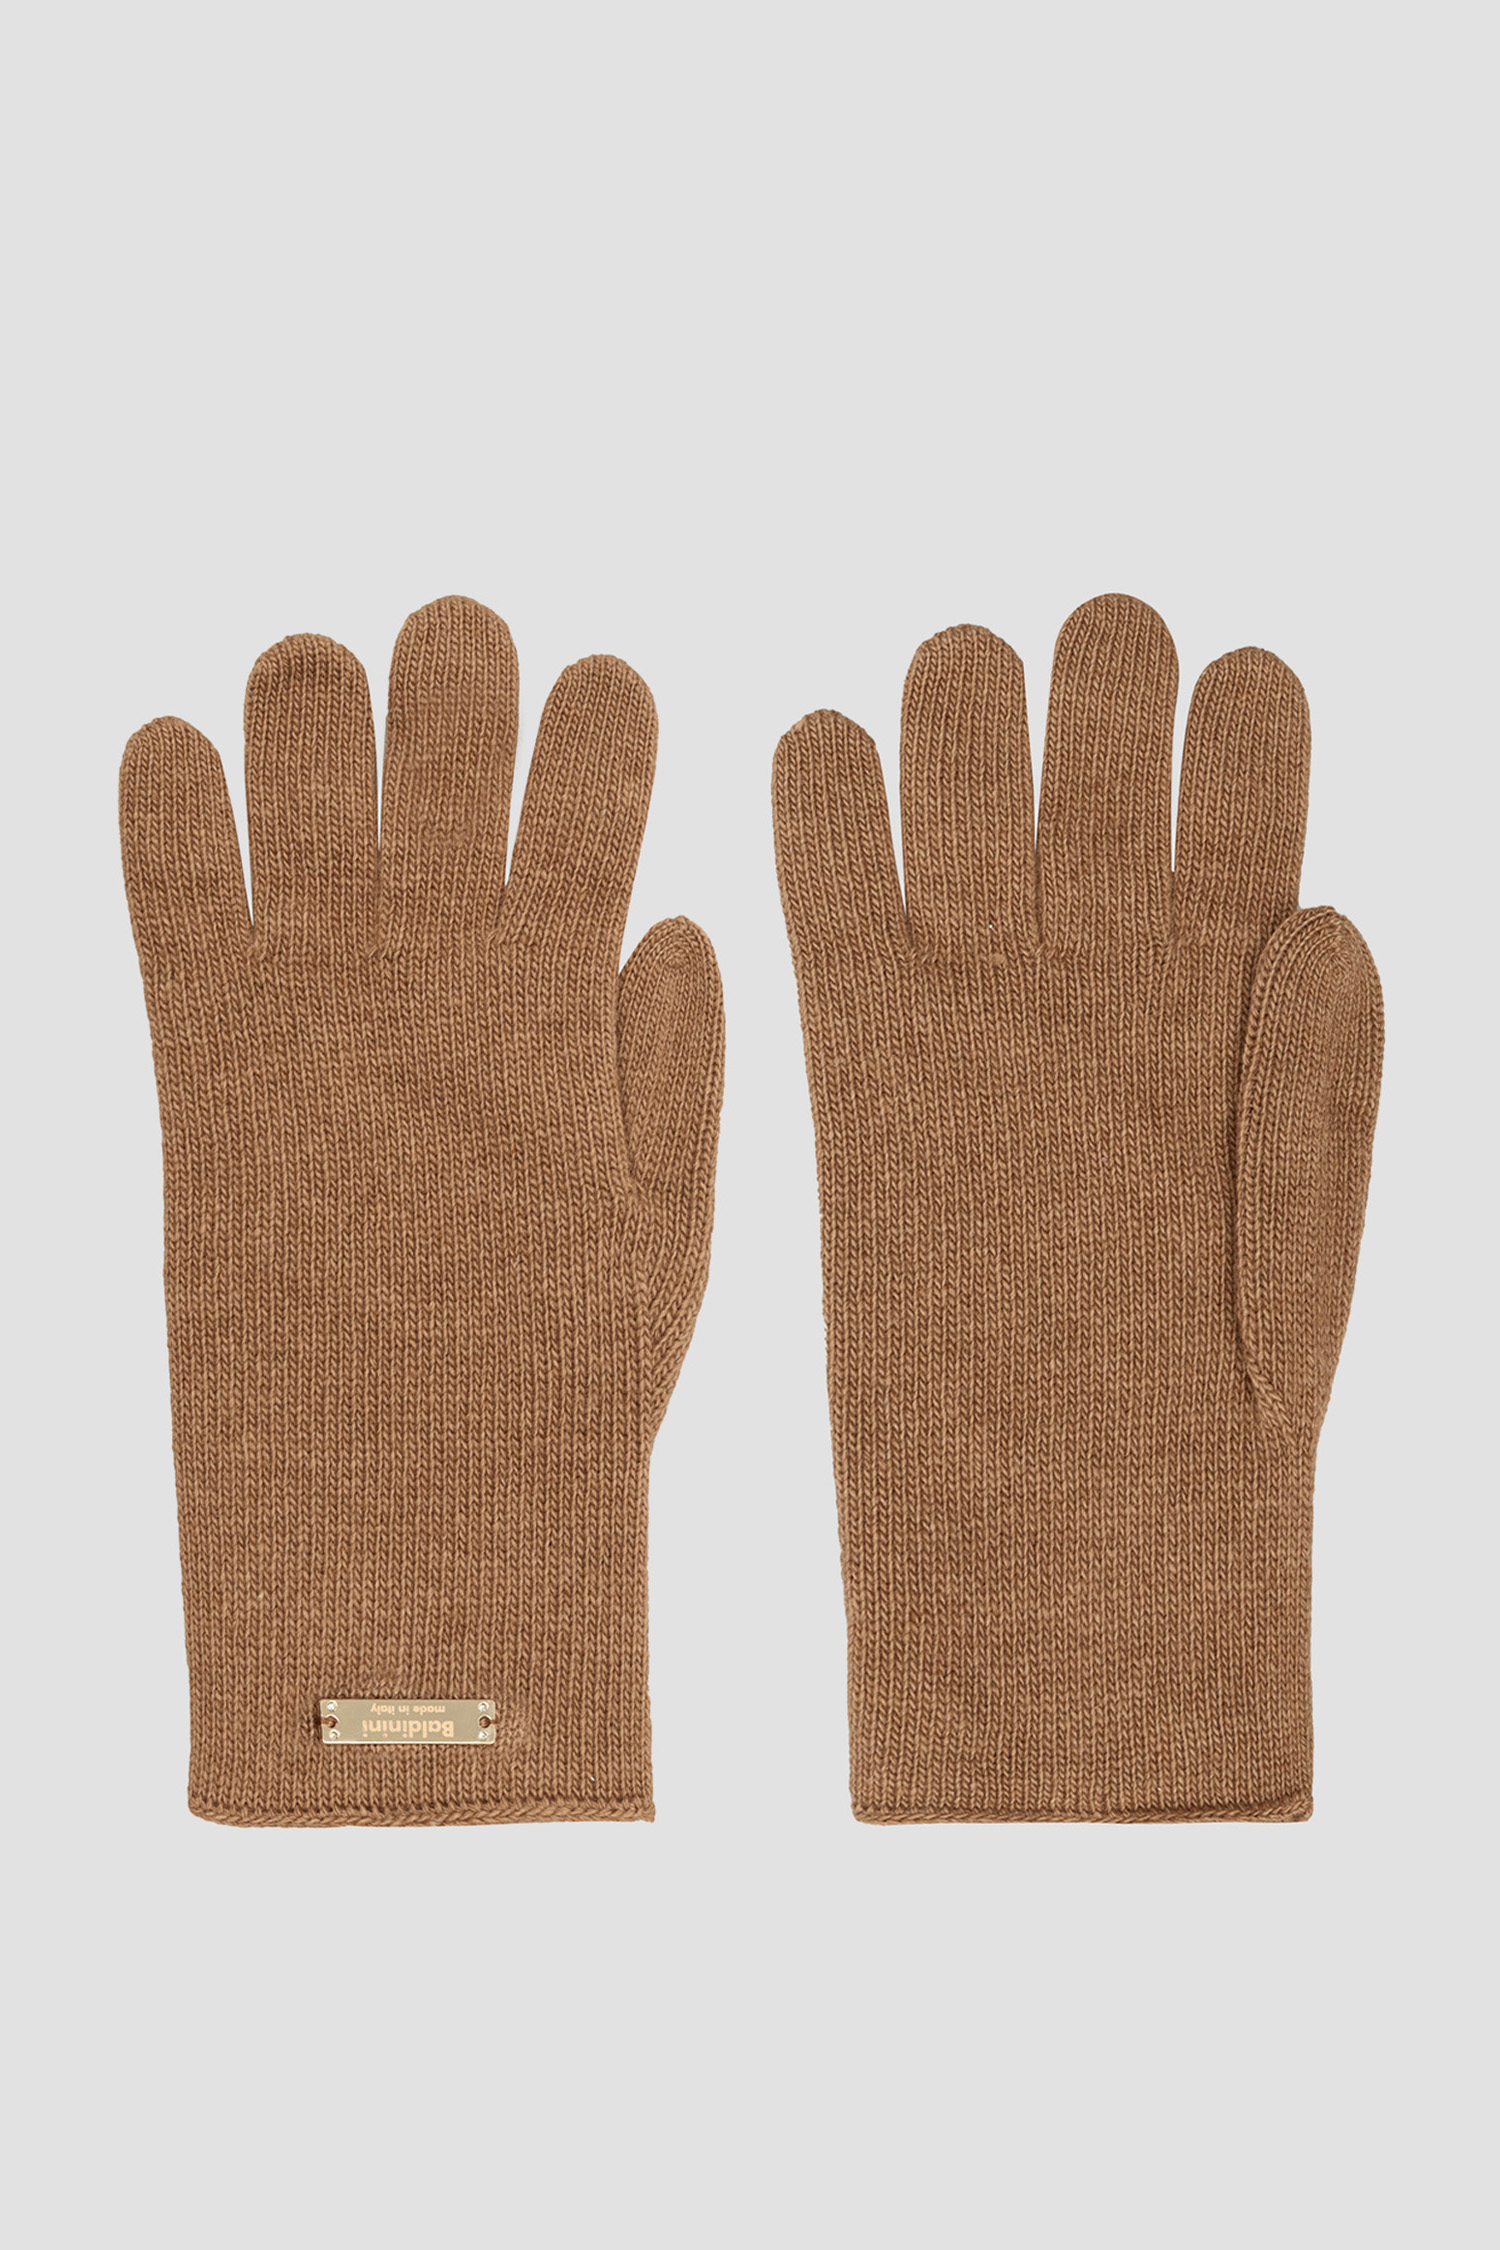 Світло-коричневі вовняні рукавички для дівчат Baldinini F2B001MSCA;4185